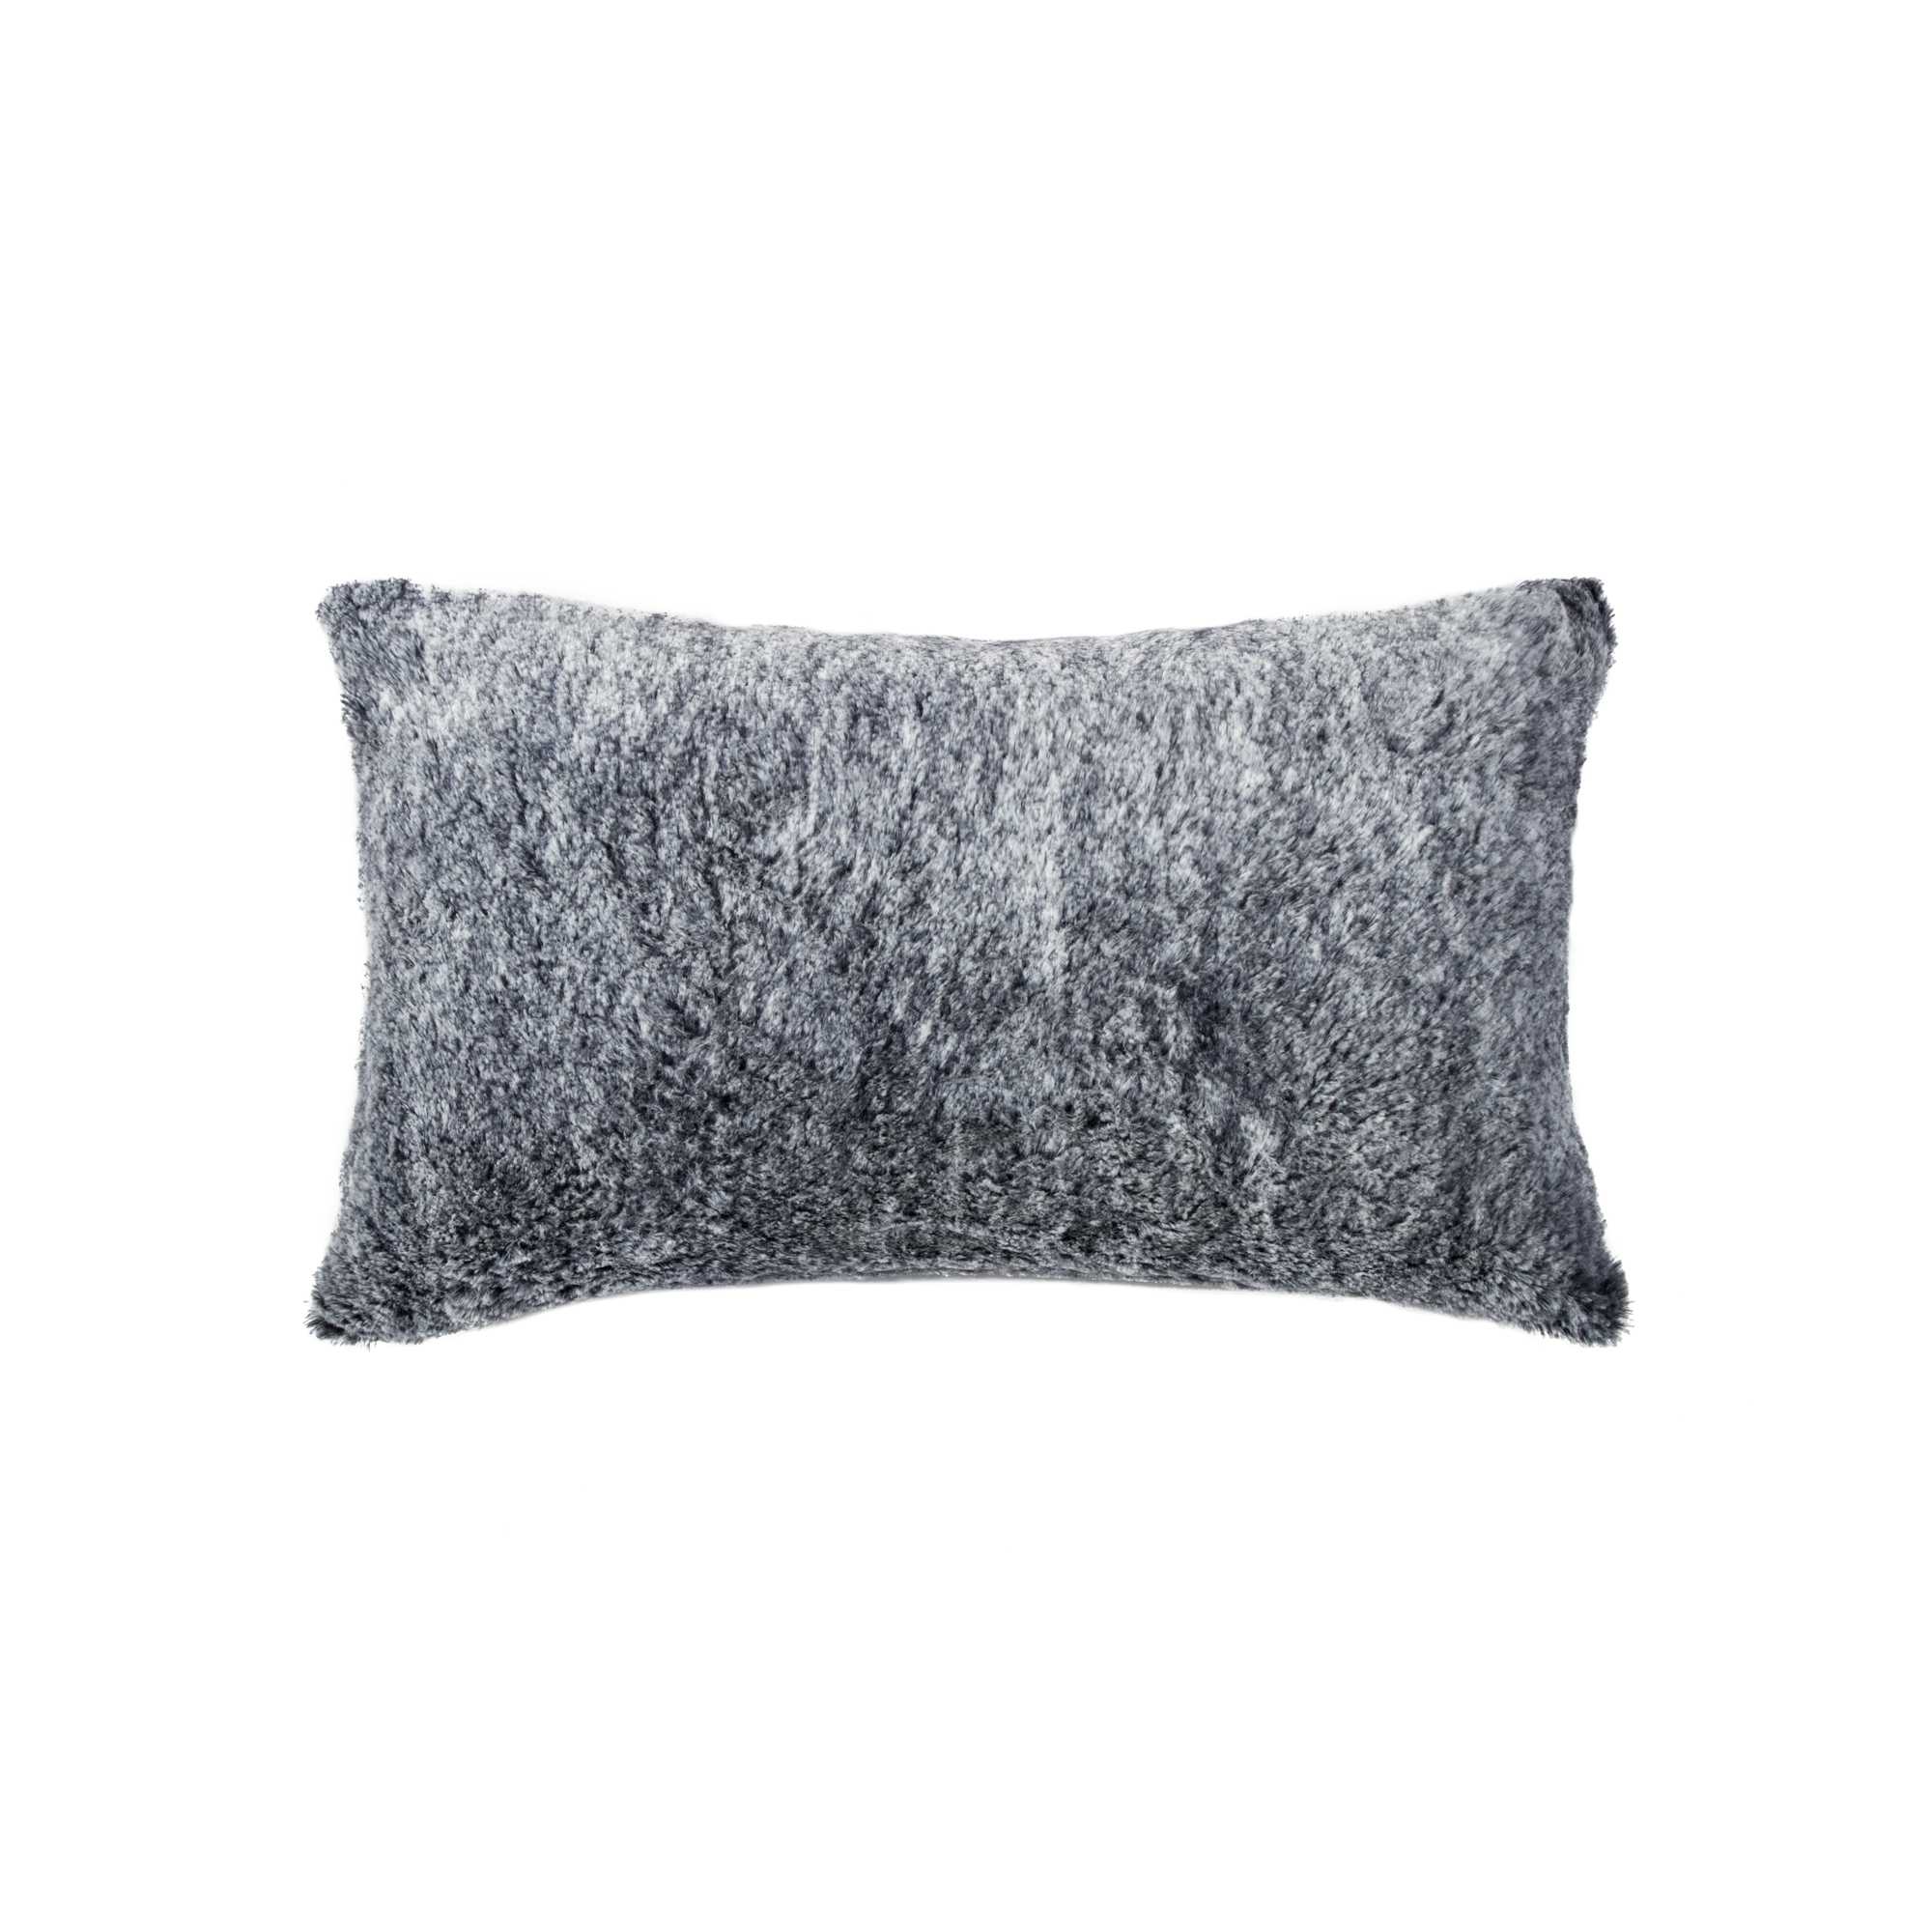 12" x 20" x 5" Modern Gray Mix Belton Faux Fur - Pillow